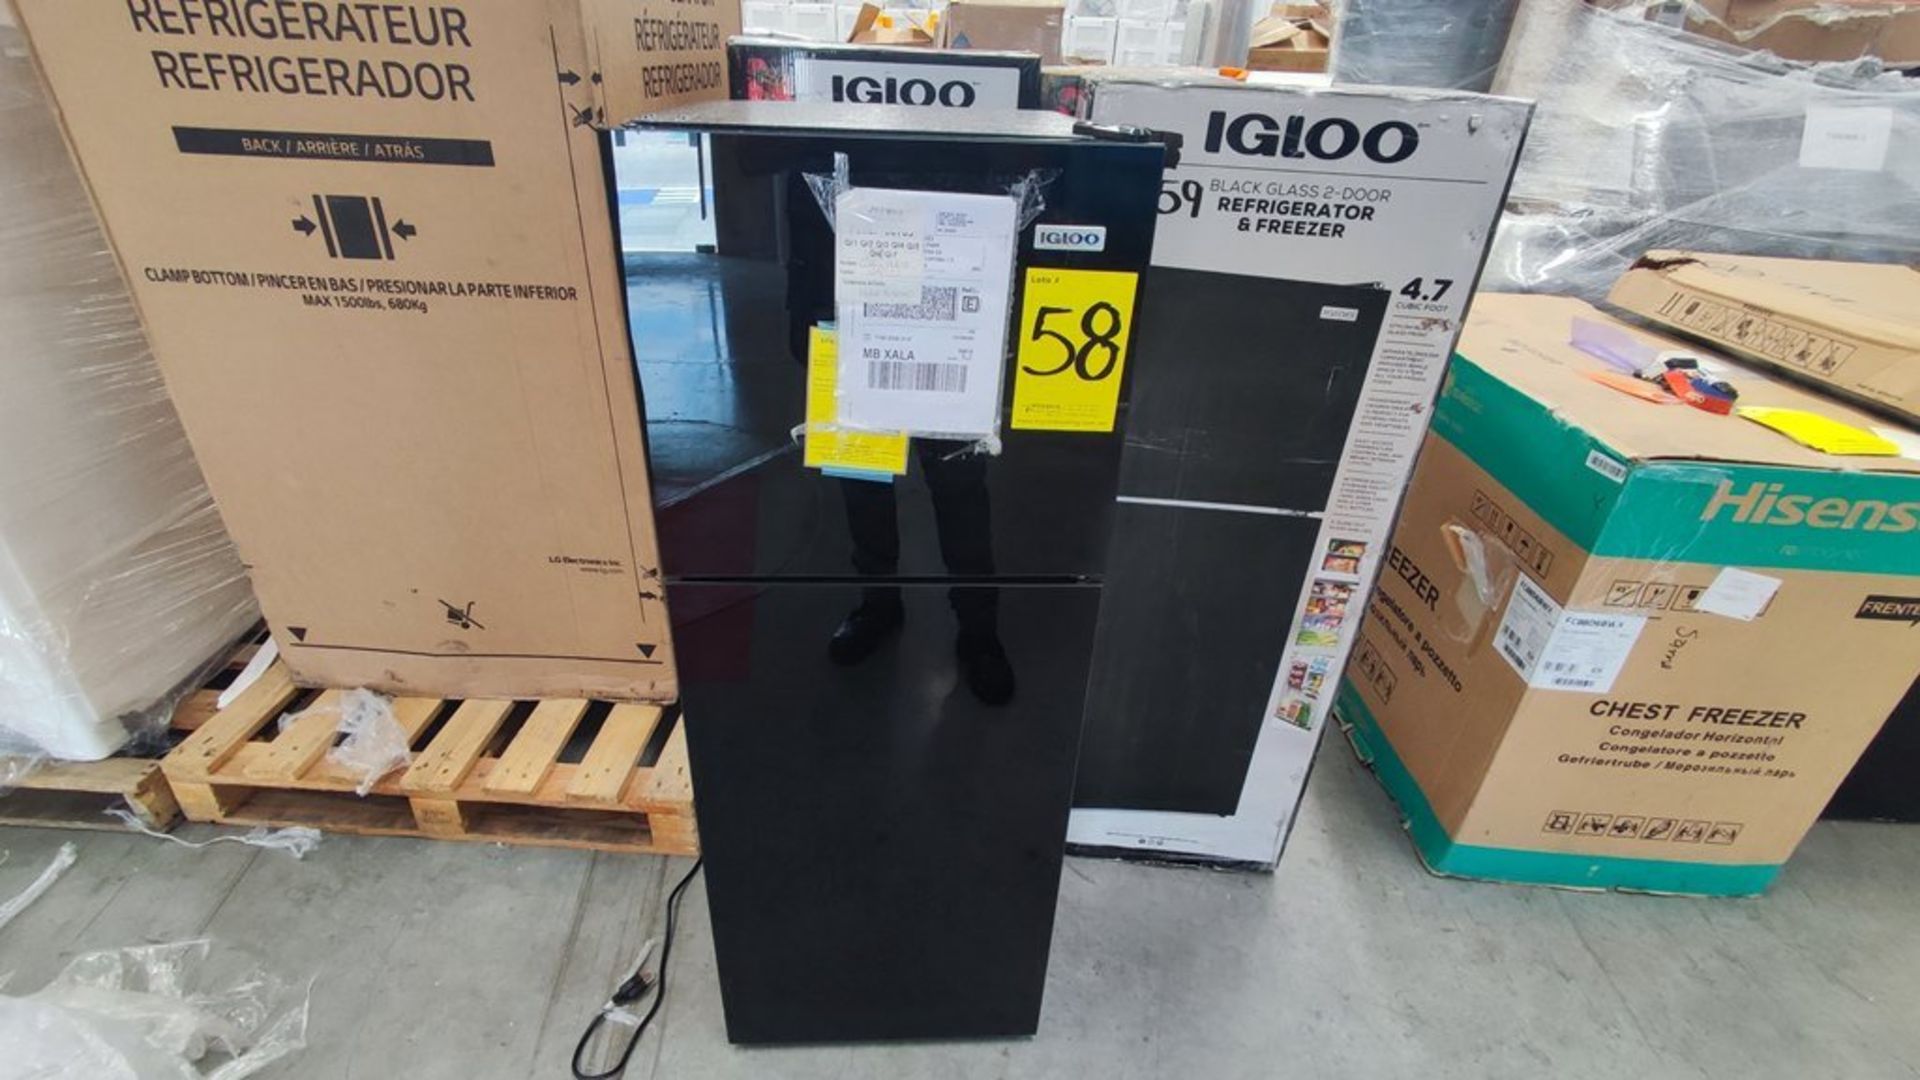 Lote Conformado por 2 Refrigeradores, Contiene; 1 Refrigerador Marca Igloo, Modelo IRF47DDGLSBK, Se - Image 2 of 21